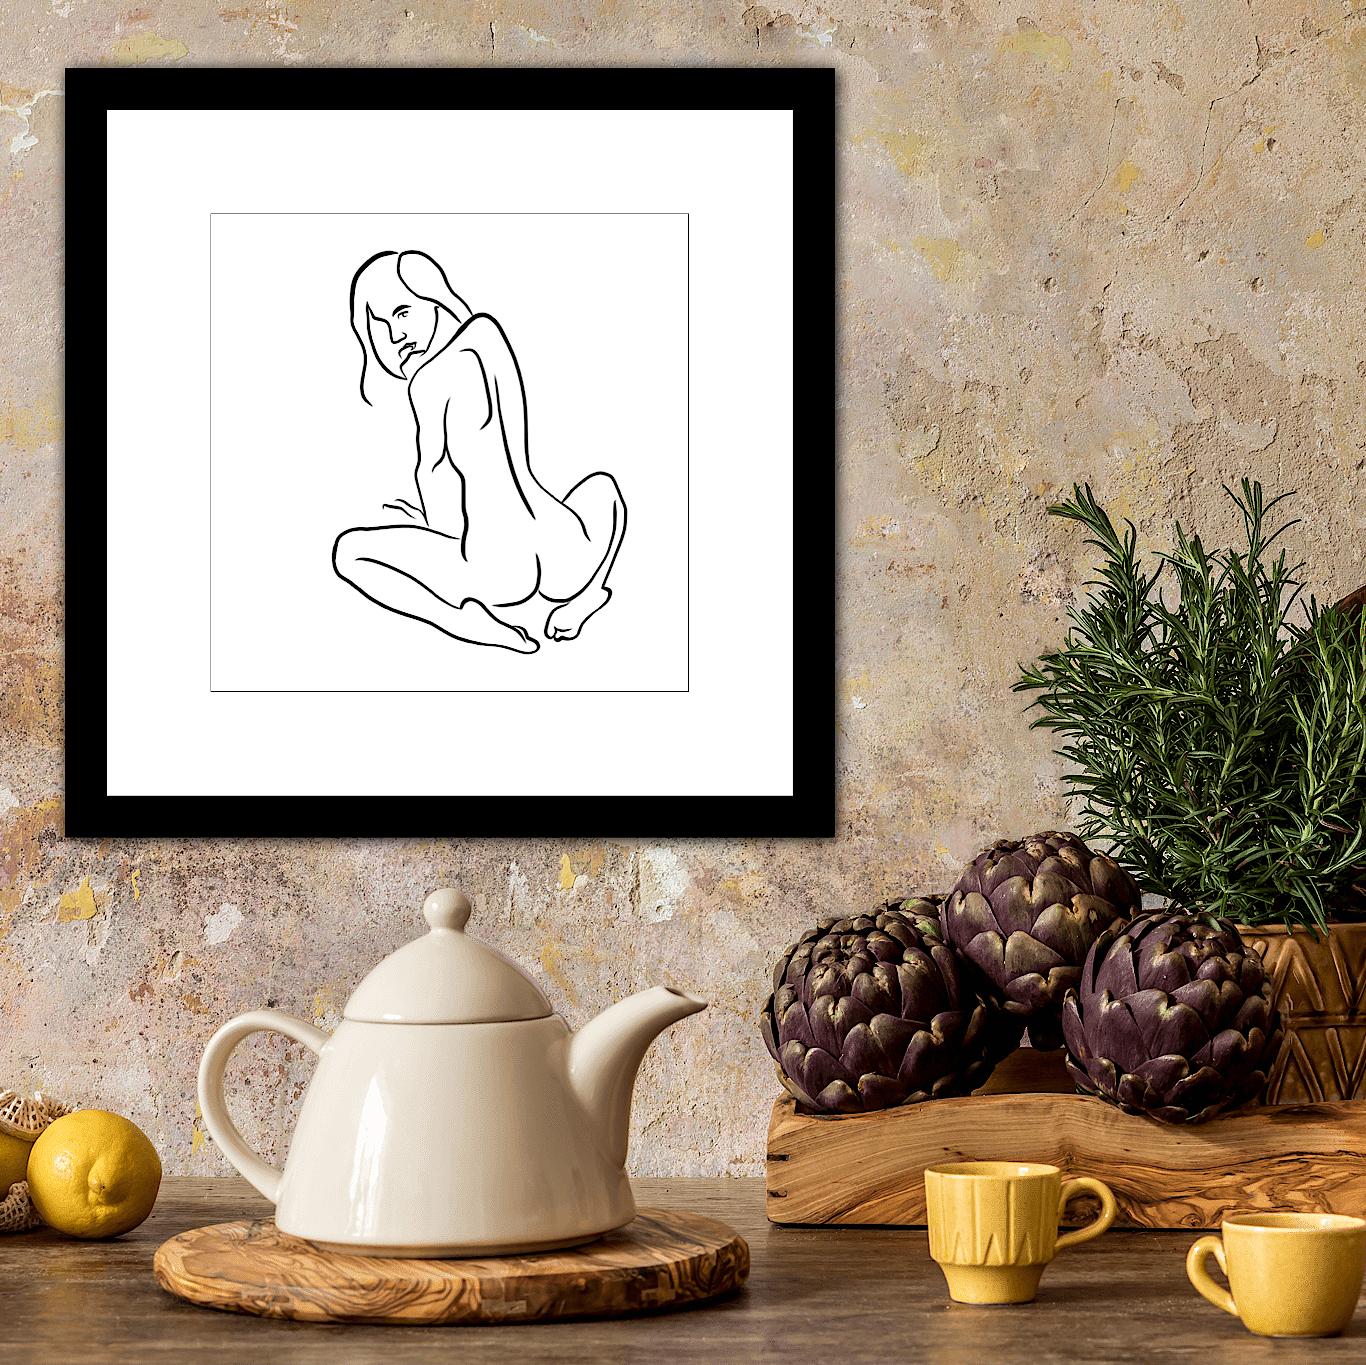 Haiku #35, 1/50 - Digital Vector Drawing Seated Female Nude Woman Figure Looking - Contemporary Print by Michael Binkley